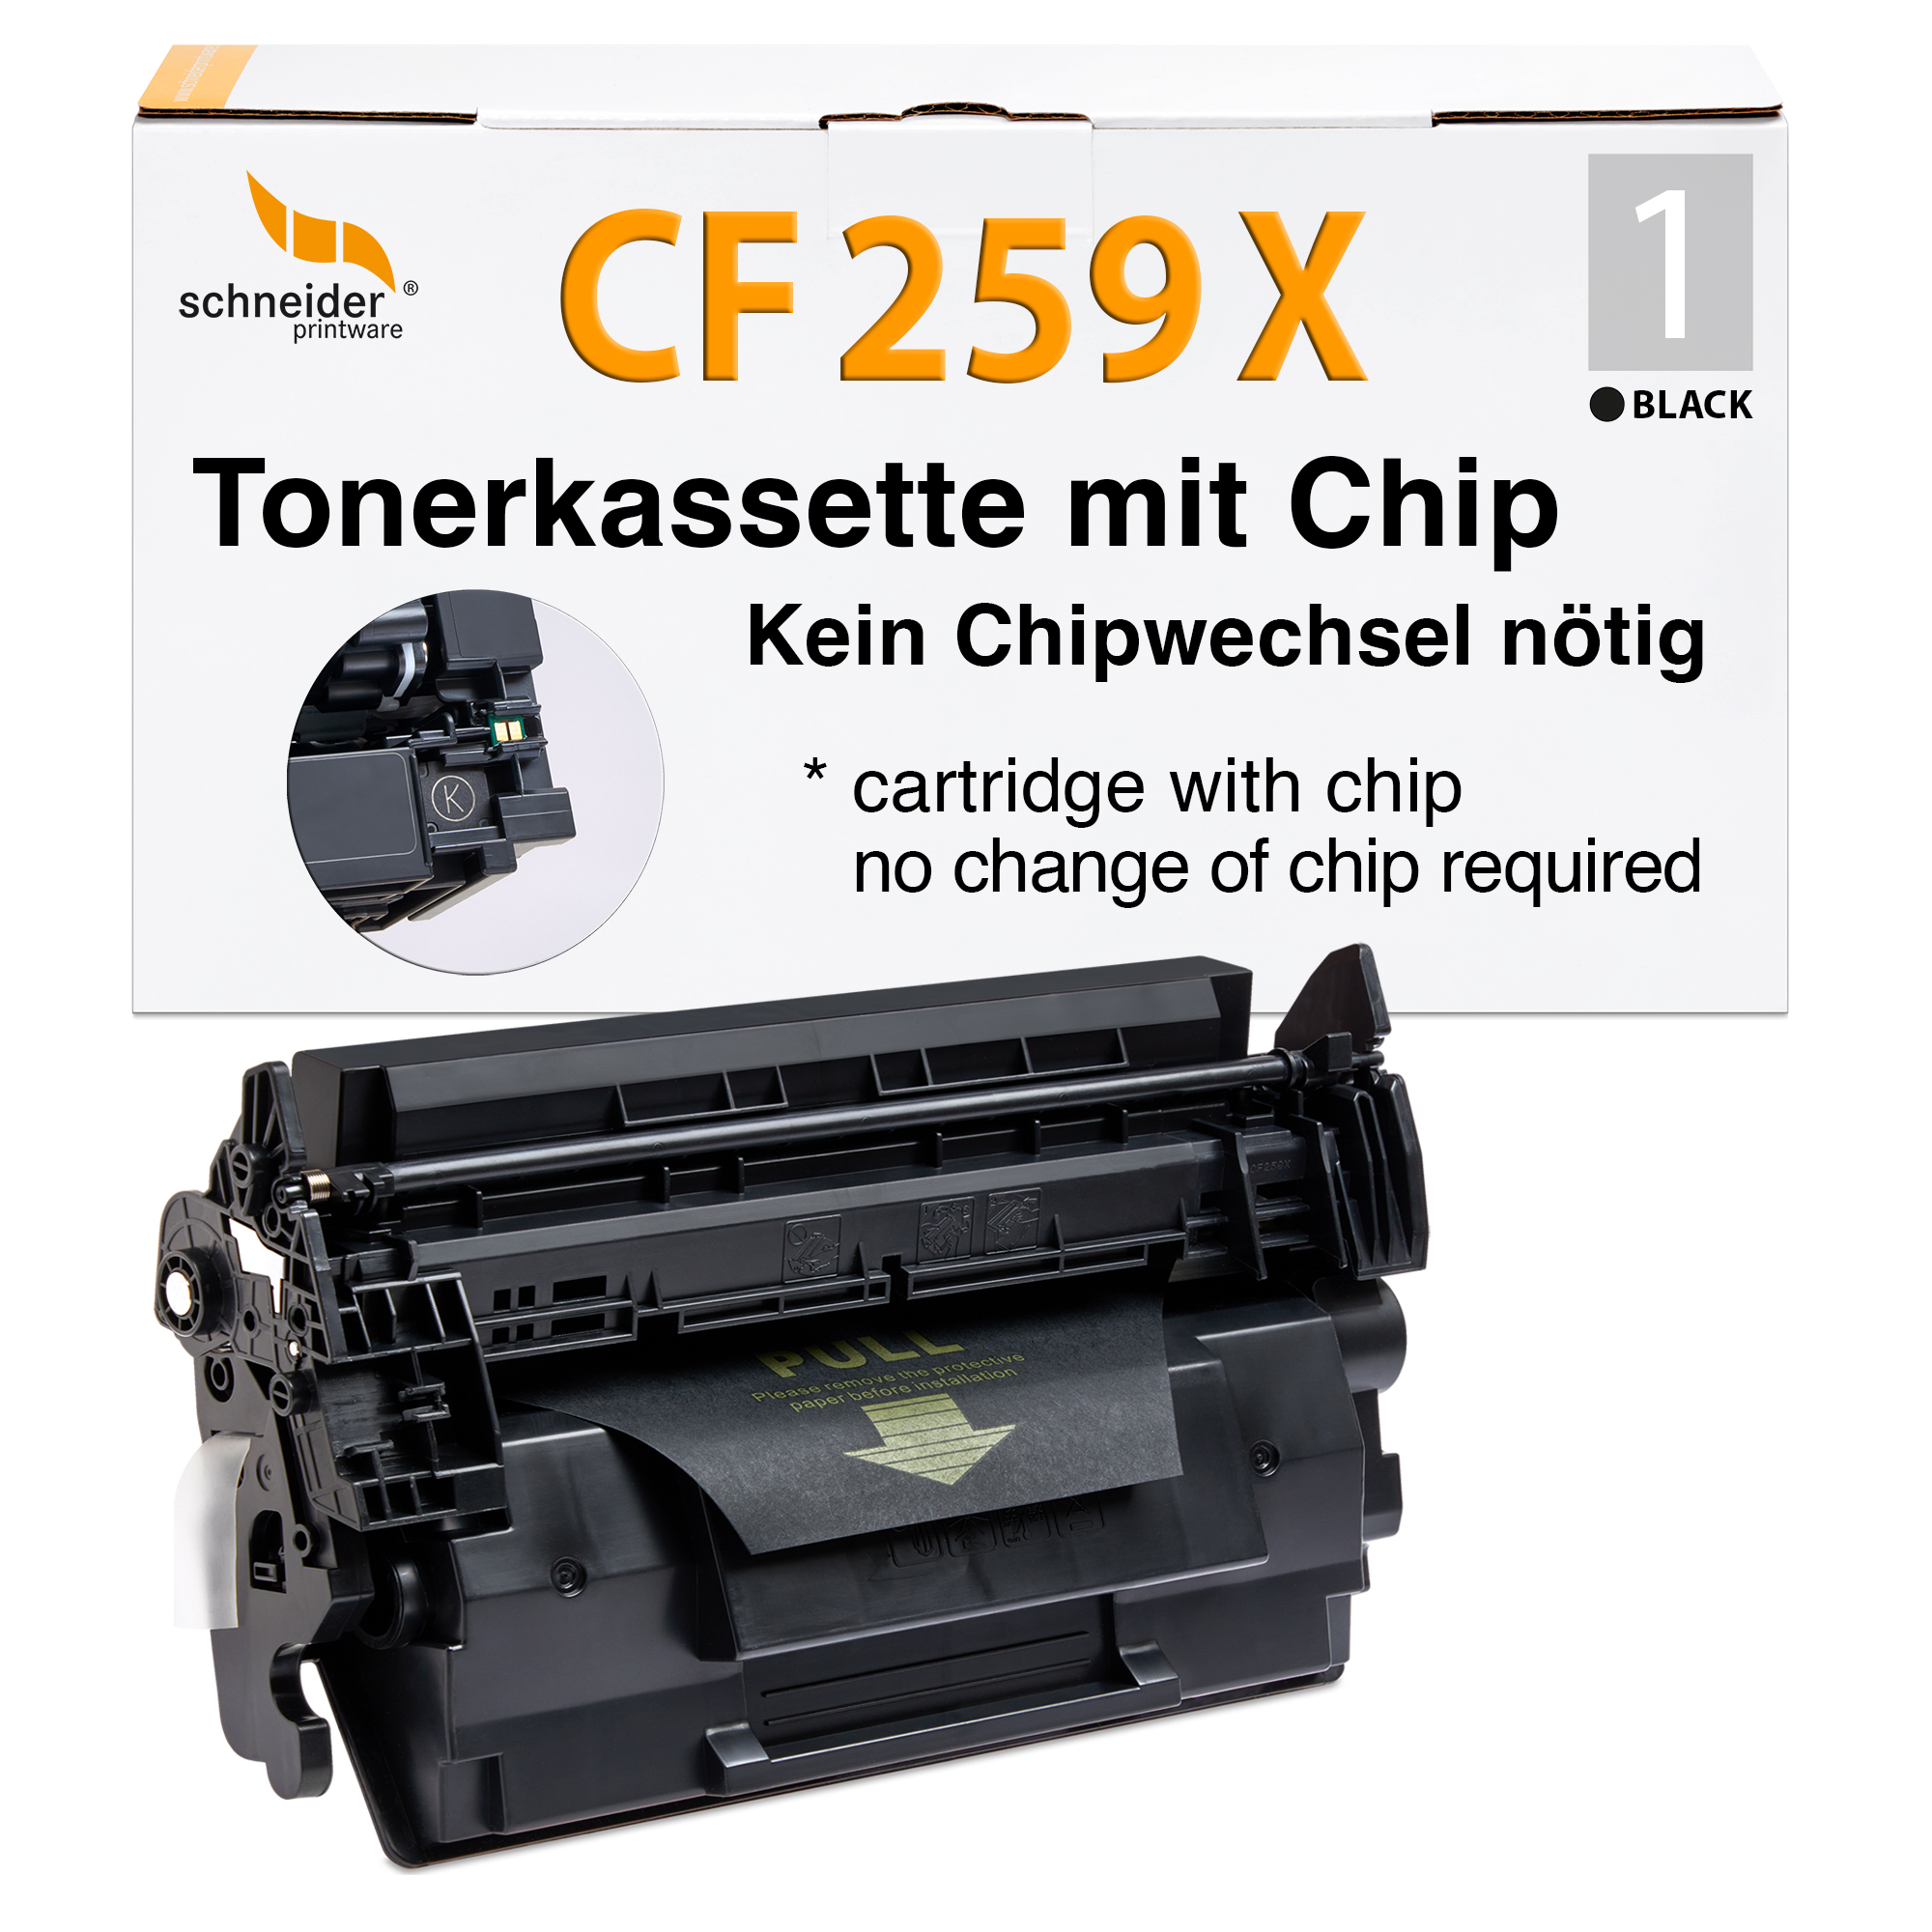 Schneiderprintware Toner MIT CHIP ersetzt HP 59X CF259X